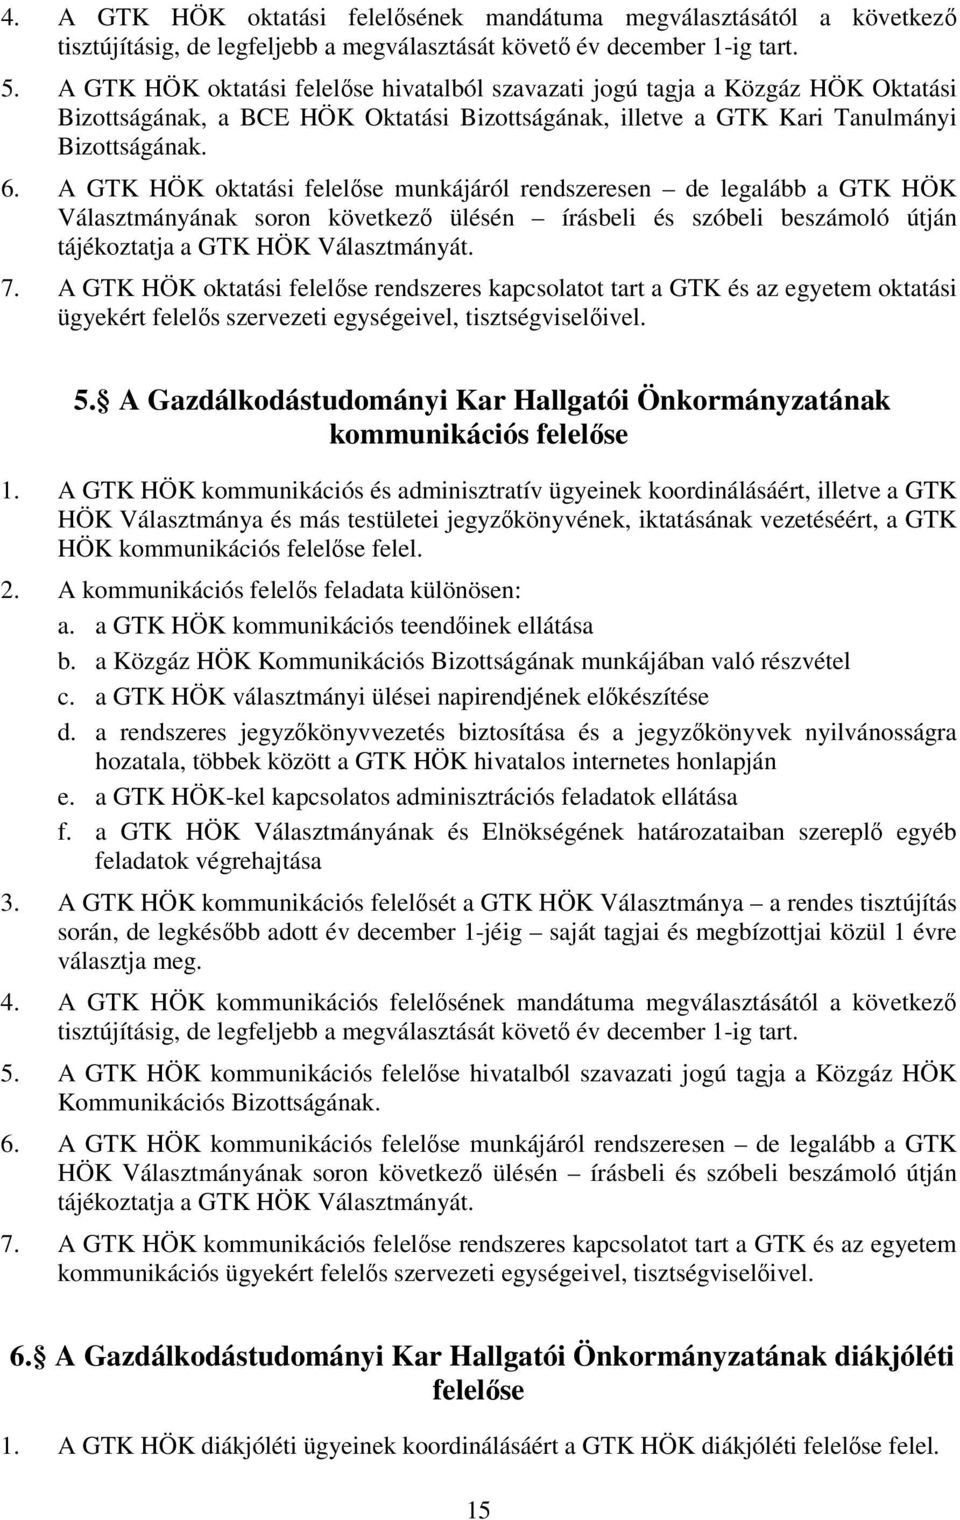 A GTK HÖK oktatási felelőse munkájáról rendszeresen de legalább a GTK HÖK Választmányának soron következő ülésén írásbeli és szóbeli beszámoló útján tájékoztatja a GTK HÖK Választmányát. 7.